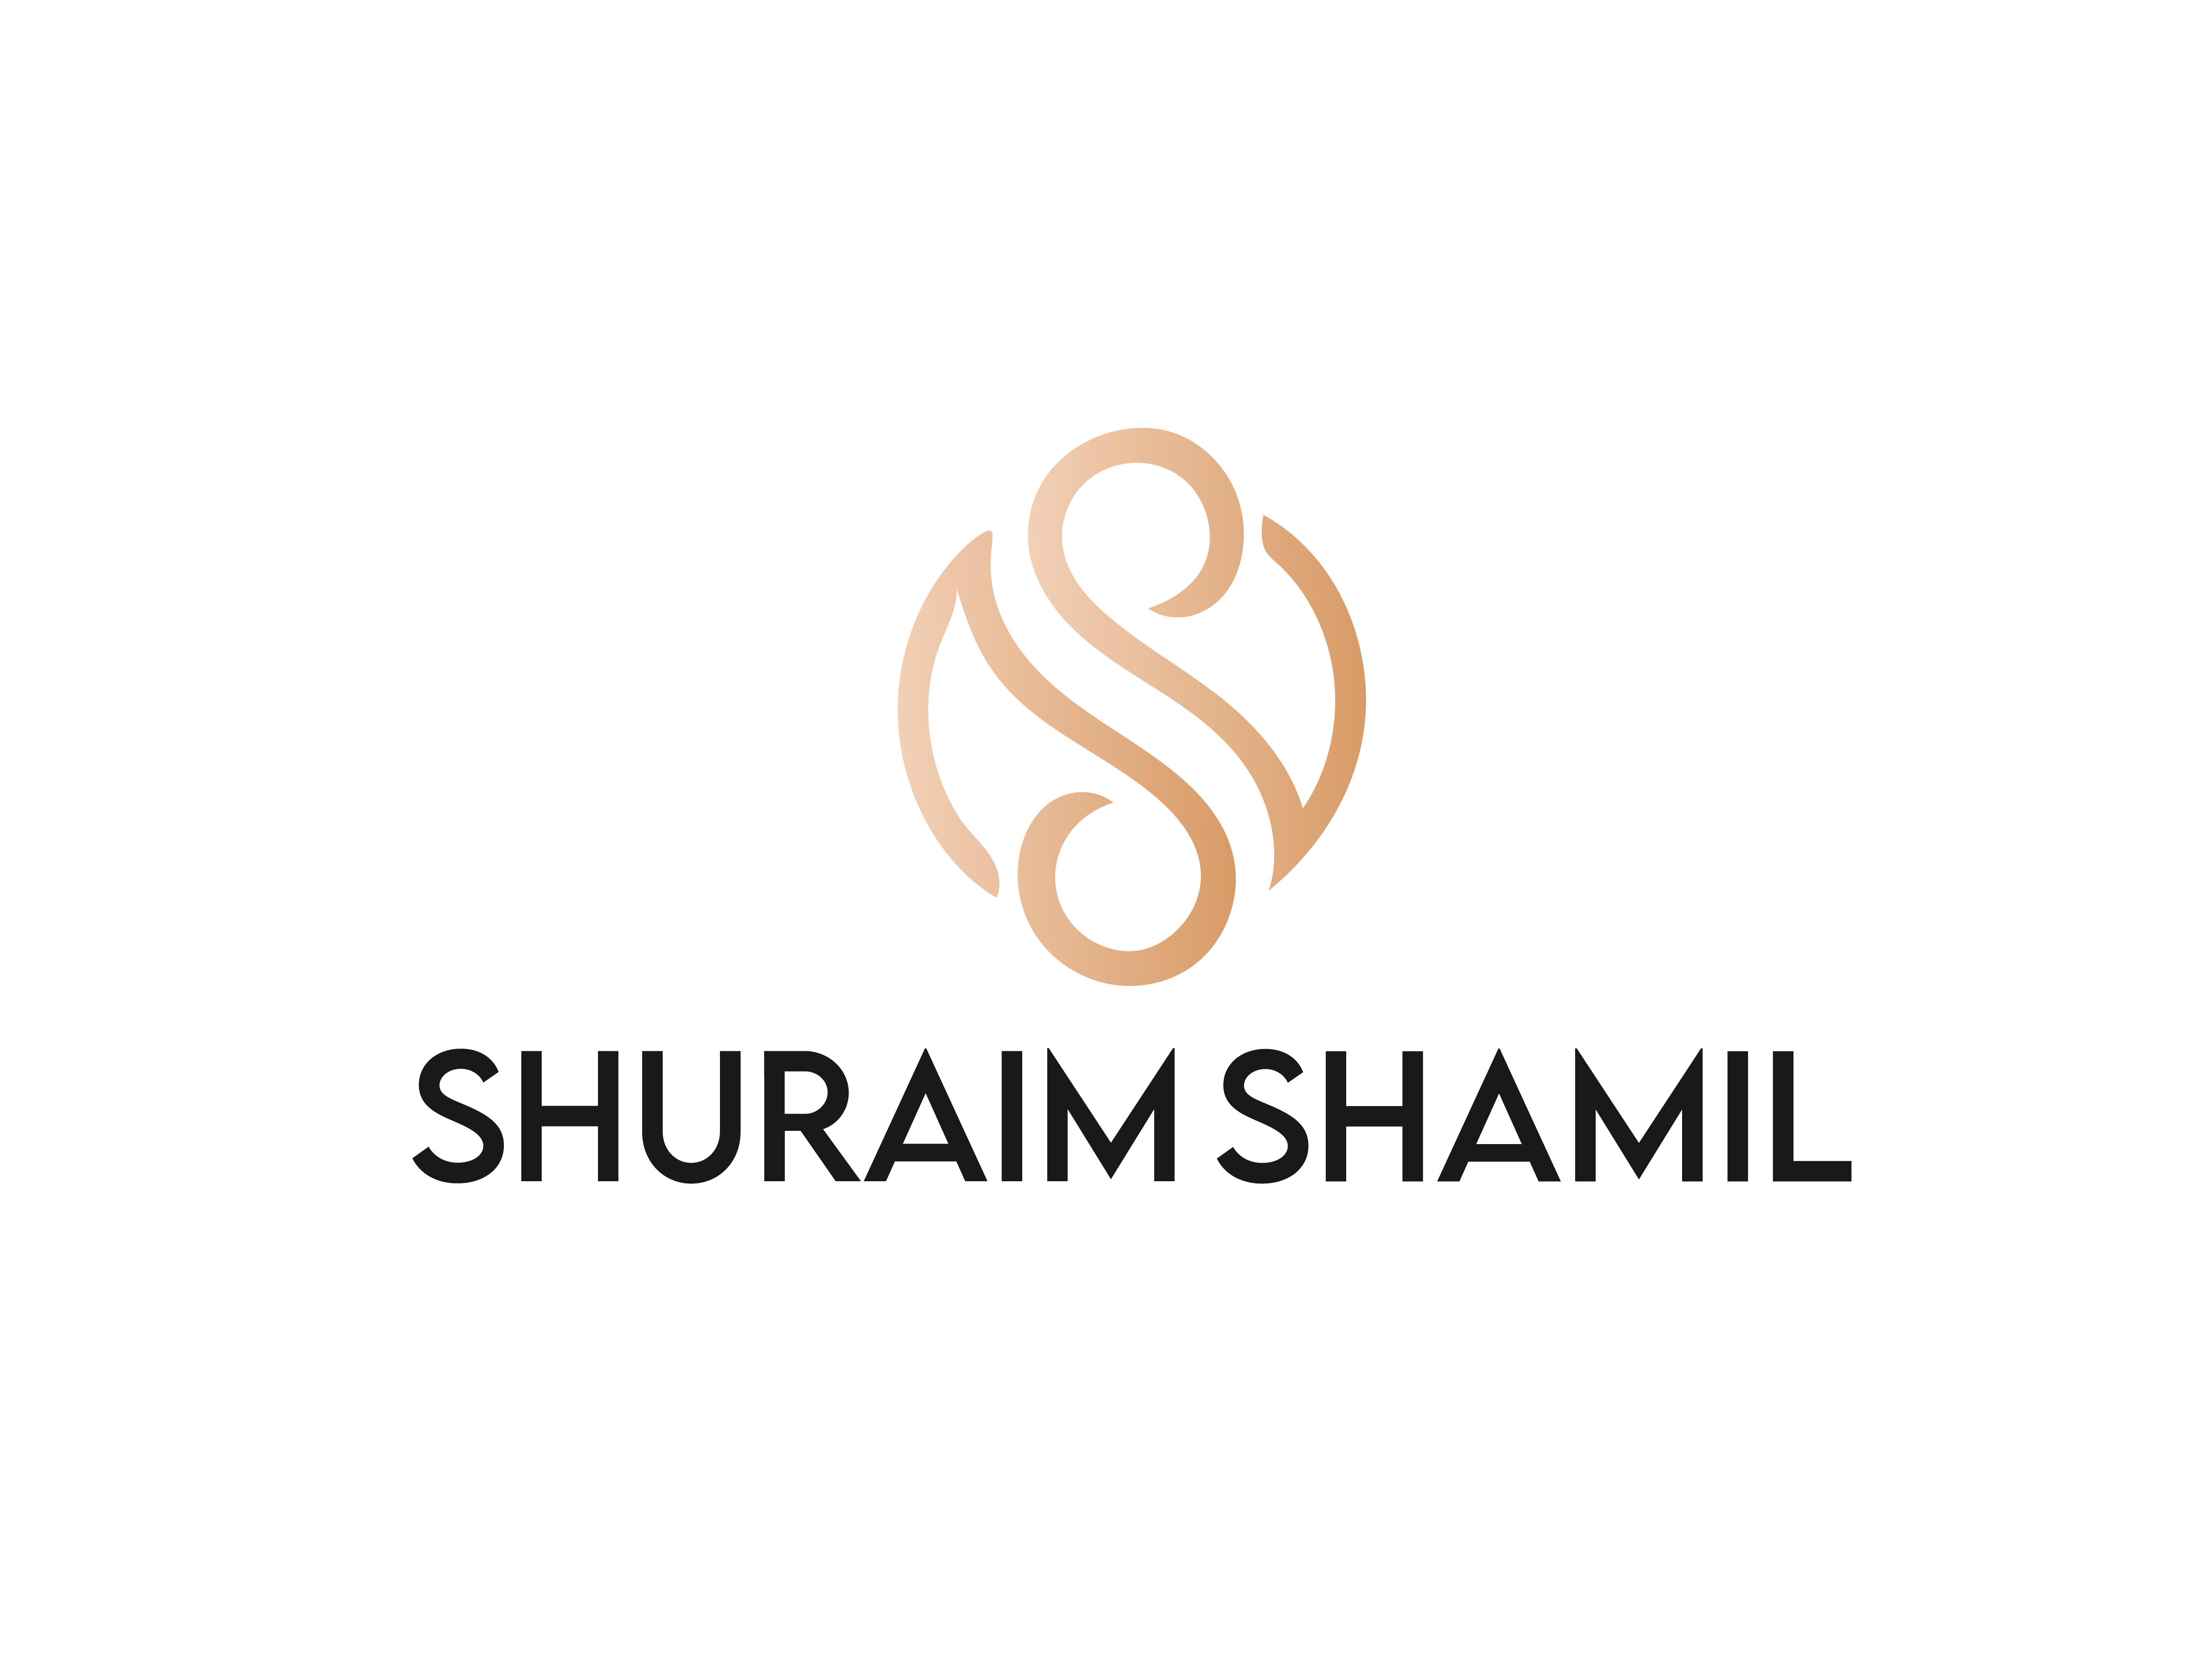 Shuraim Shamil